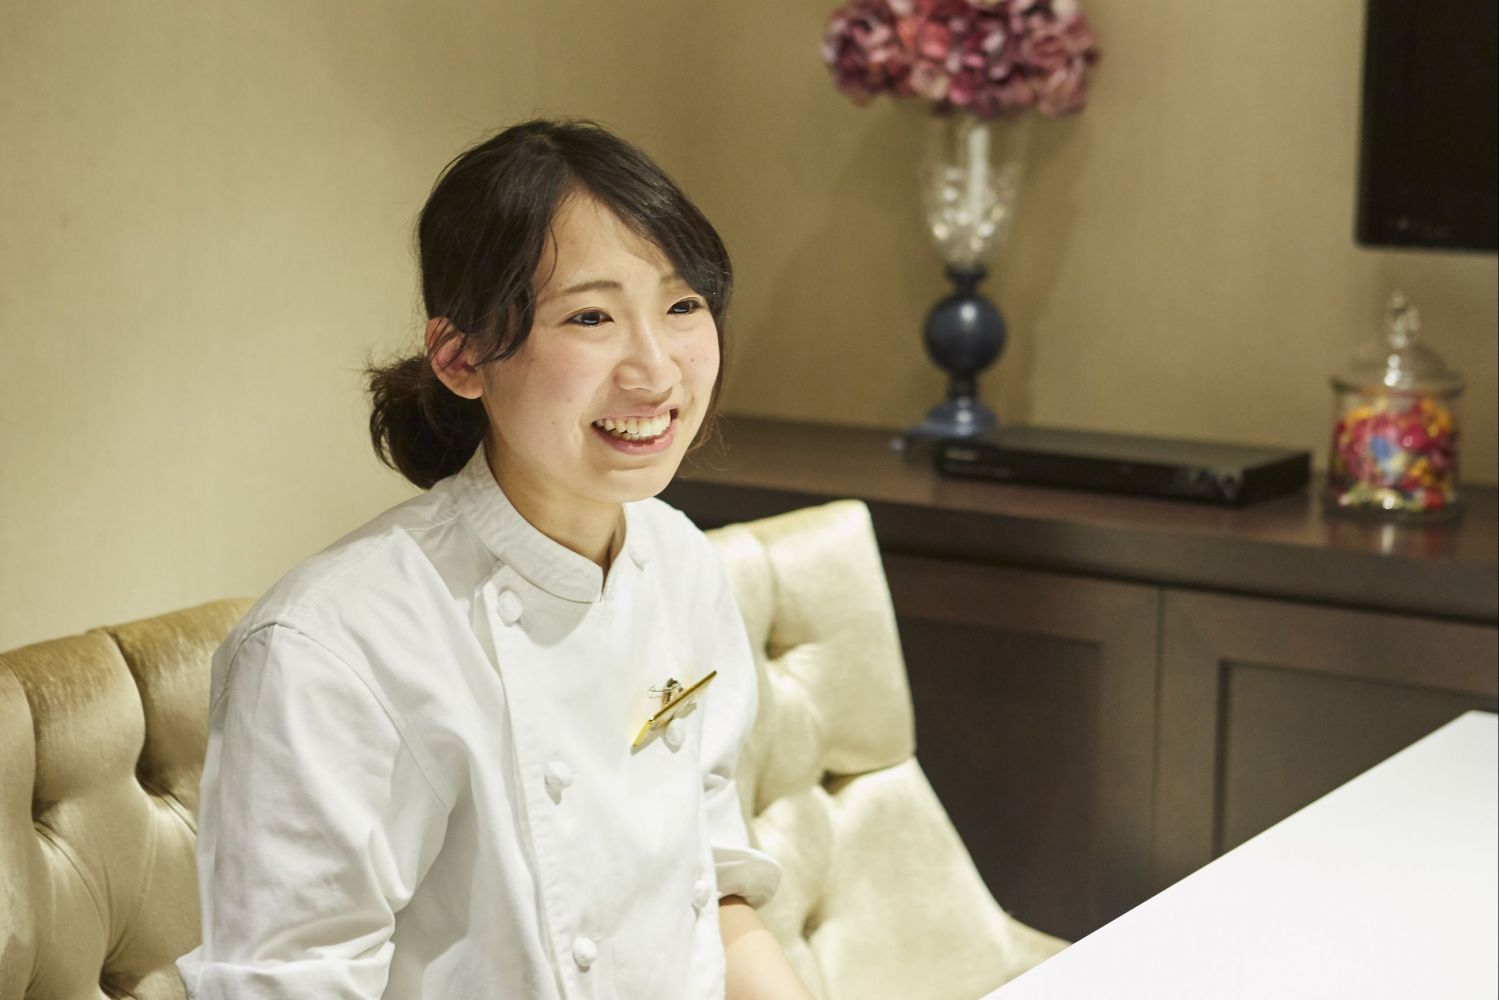 ホテル インターコンチネンタル 東京ベイ パティシエ 飯岡 奈々さん 世界屈指のパティシエを追いかけて 料理を作るからはじまる100人の仕事 Professions Of Food And プロフェッションズ